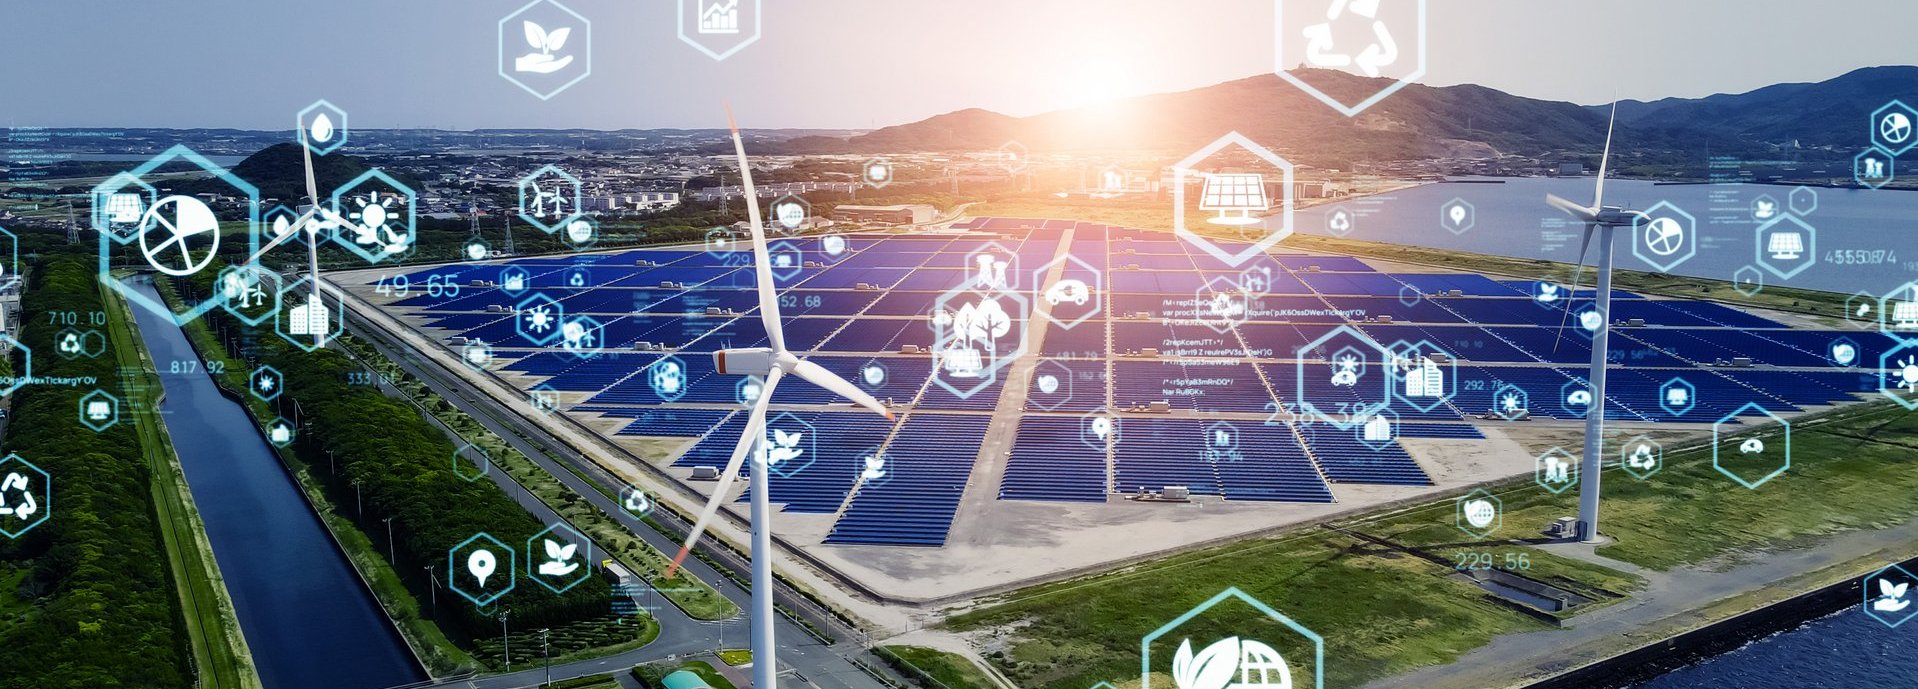 Icons aus dem Energiebereich vor einem Solargrid und Windrädern